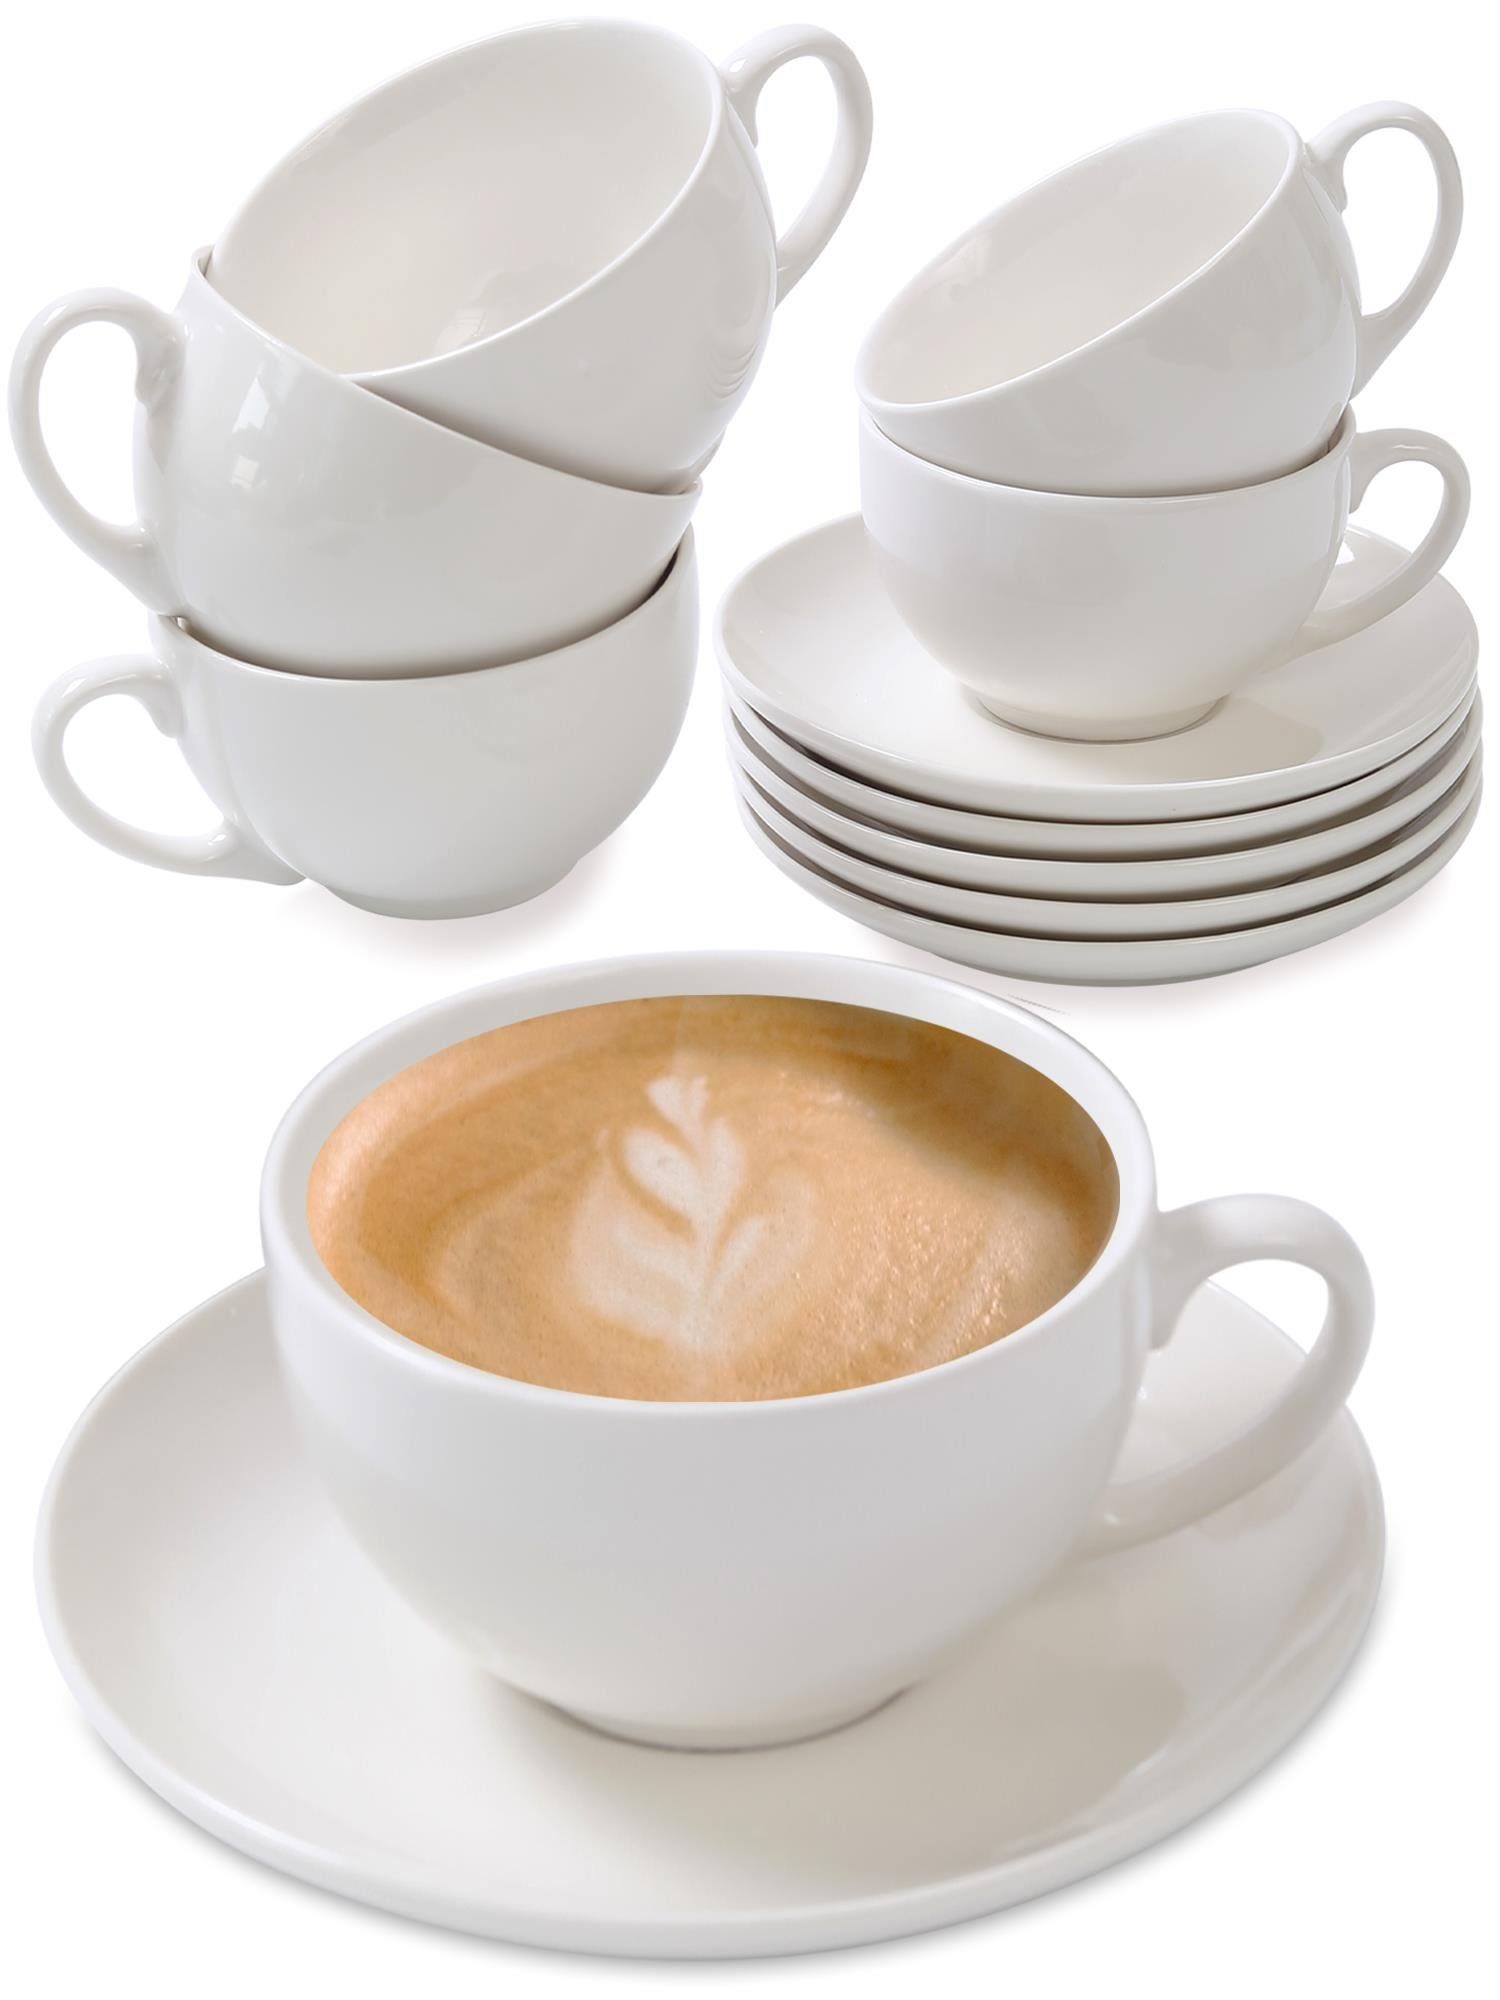 Cosumy Cappuccinotasse »Cappuccino Tassen 6er Set aus Keramik Weiß«,  Keramik, Mit Untertassen - Hält Lange warm - Spülmaschinenfest - 180ml  online kaufen | OTTO